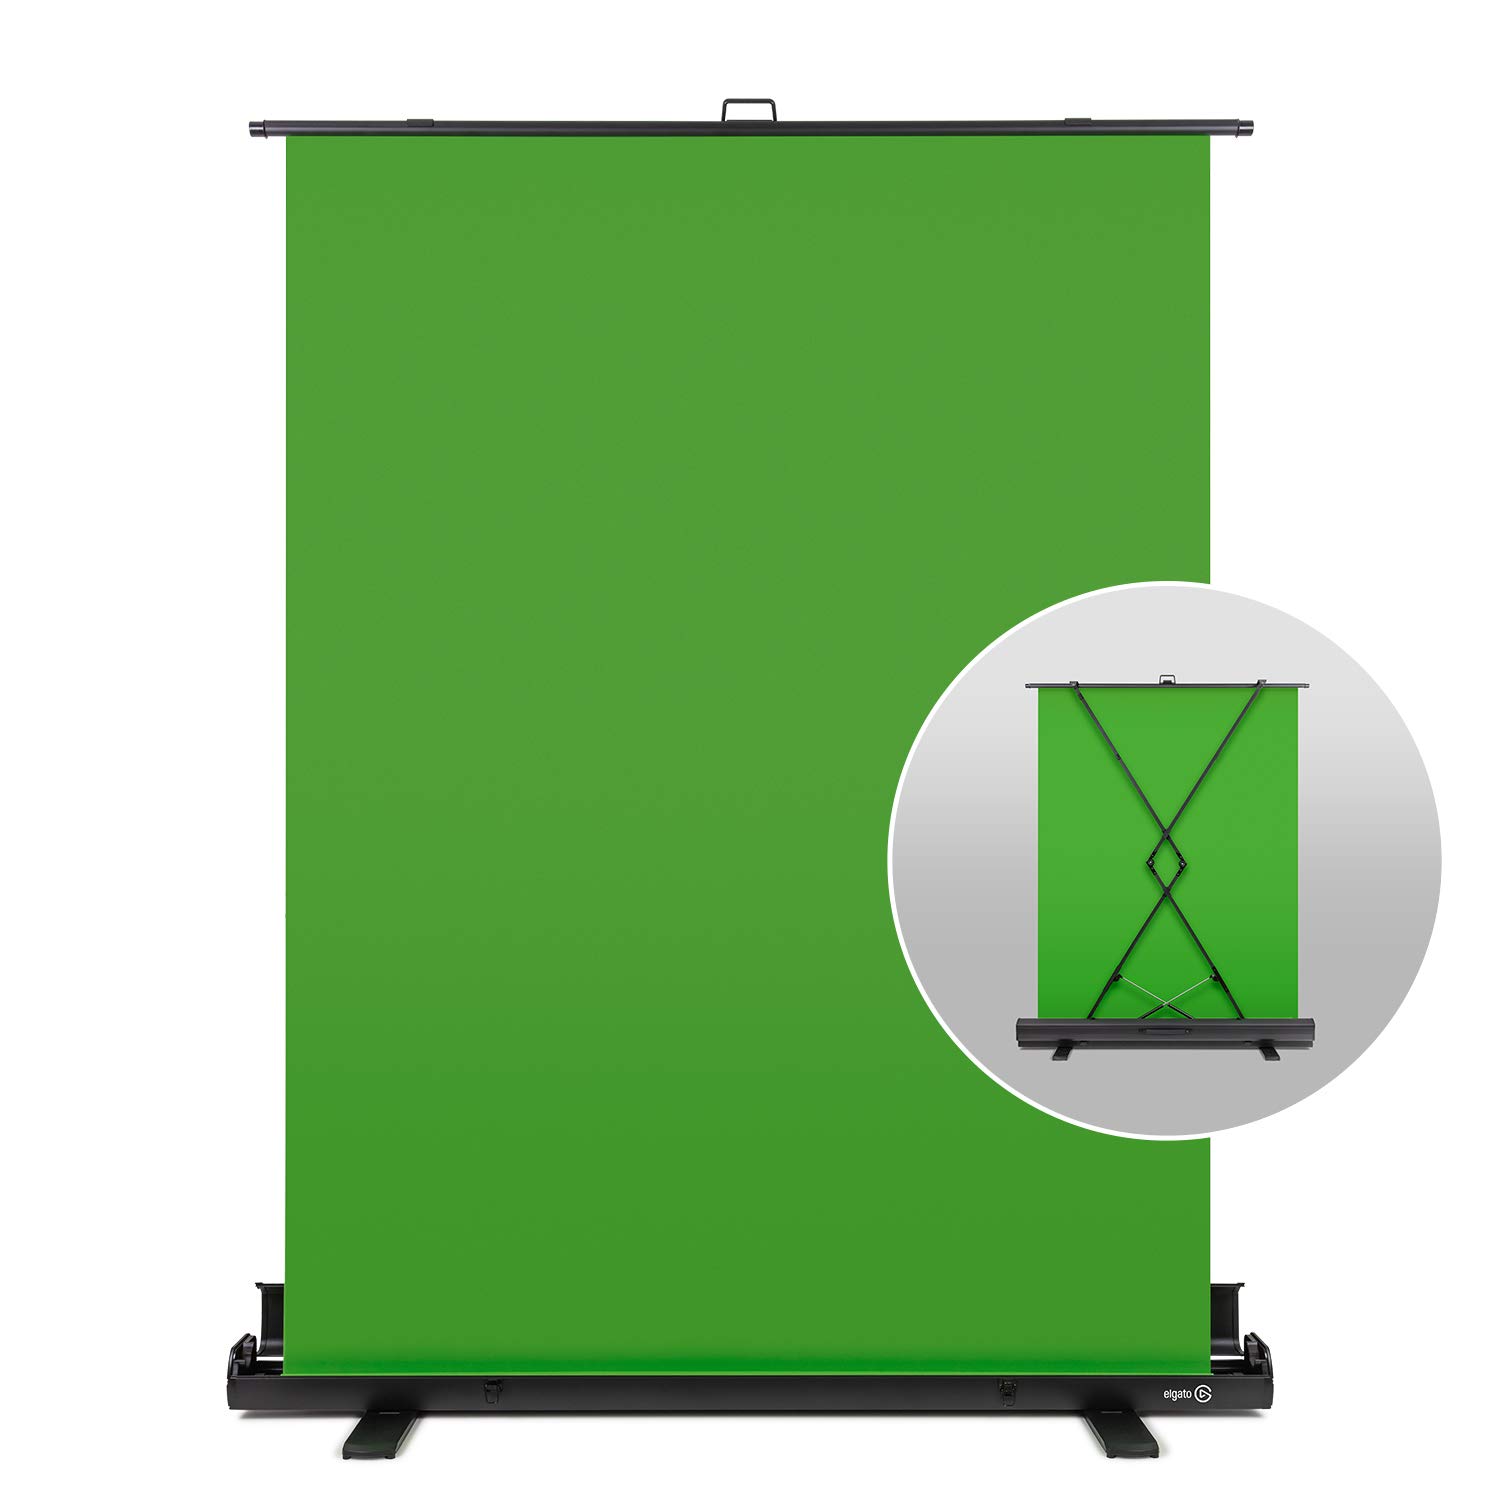 Elgato Green Screen - một lựa chọn lý tưởng cho những người muốn có không gian làm việc nhỏ gọn và tiện lợi hơn. Không chỉ mang lại sự lưu trữ tiết kiệm mà giúp bạn tạo ra những bộ phim chuyên nghiệp một cách dễ dàng. Hãy tạm rời sự ồn ào xung quanh và chiêm ngưỡng hình ảnh liên quan ngay bây giờ!